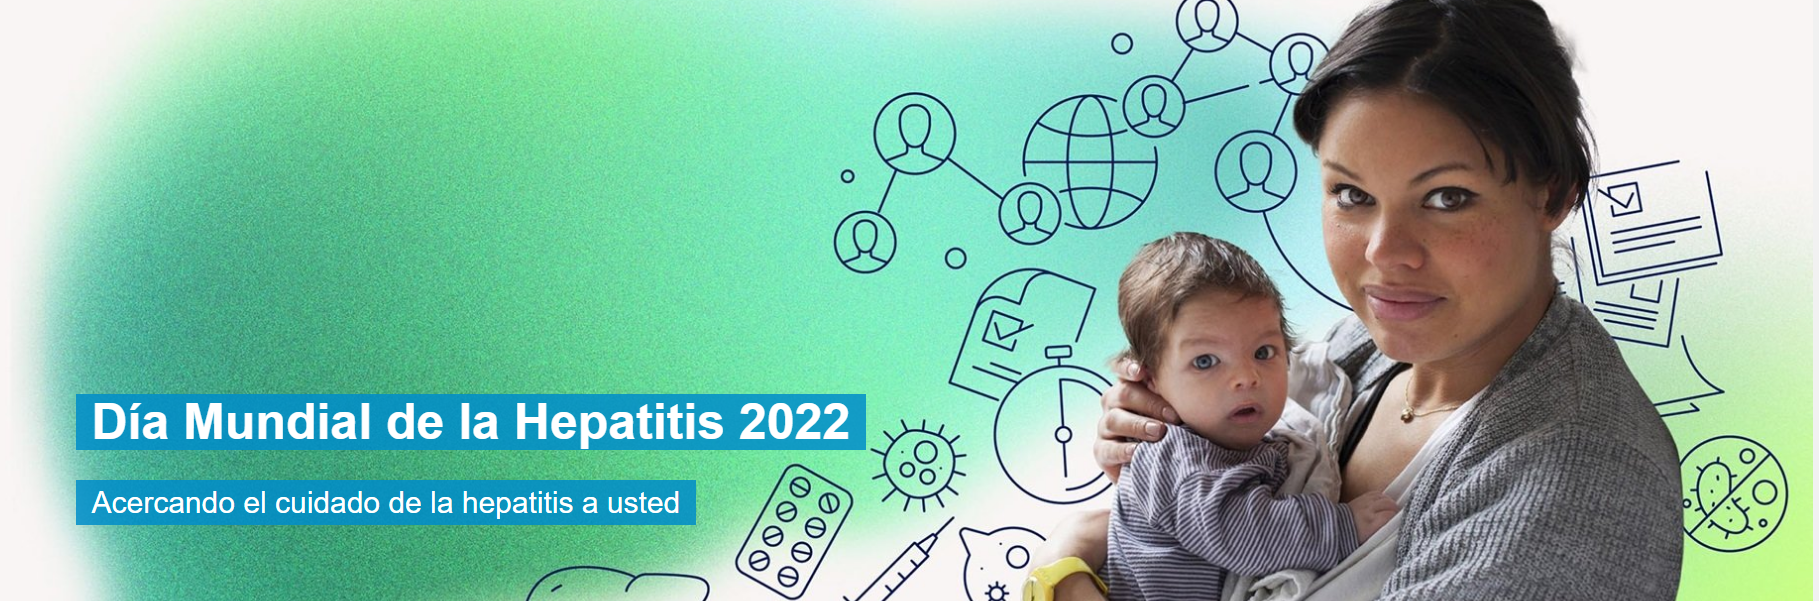 Día Mundial de la Hepatitis 2022